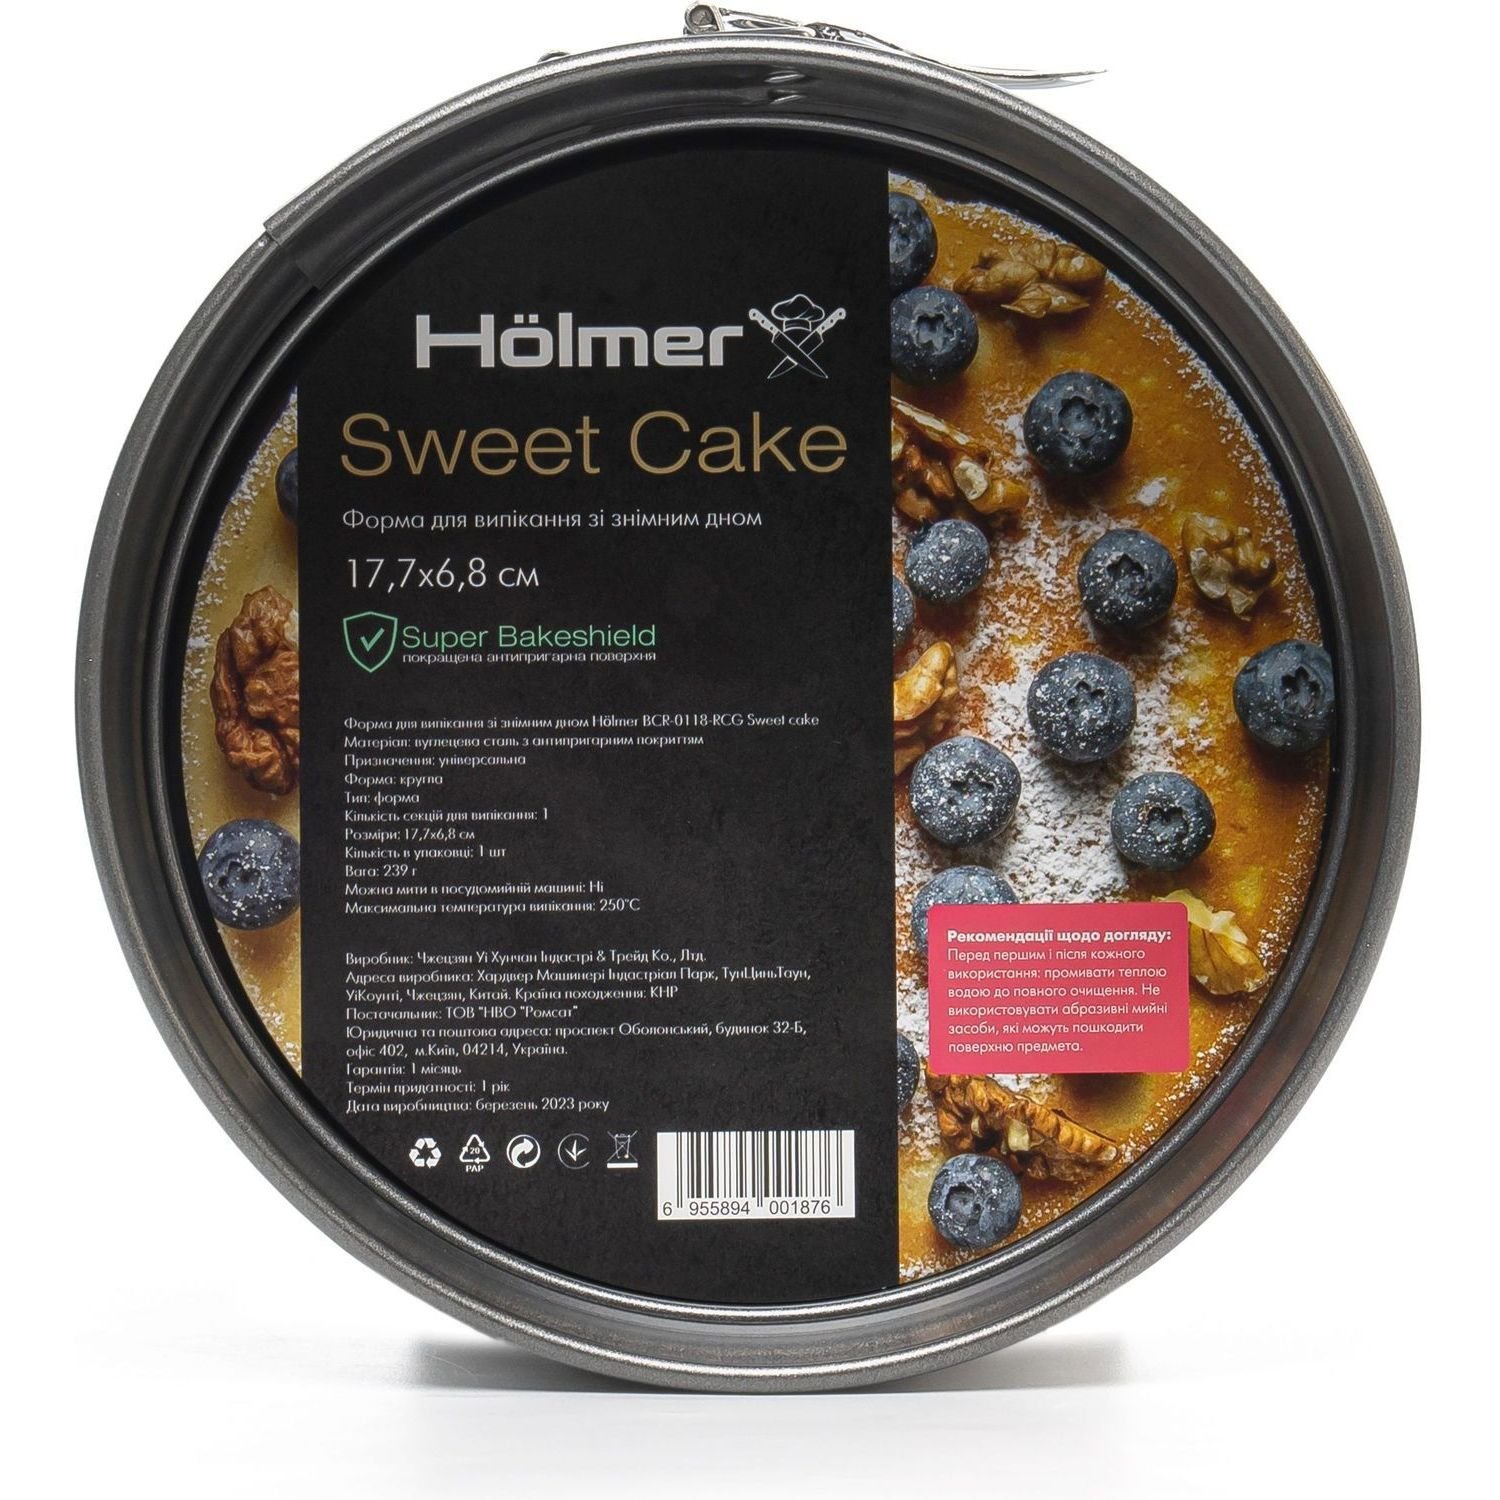 Форма для випікання Holmer BCR-0118-RCG Sweet cake зі знімним дном 17.7 см чорна (BCR-0118-RCG Sweet cake) - фото 5